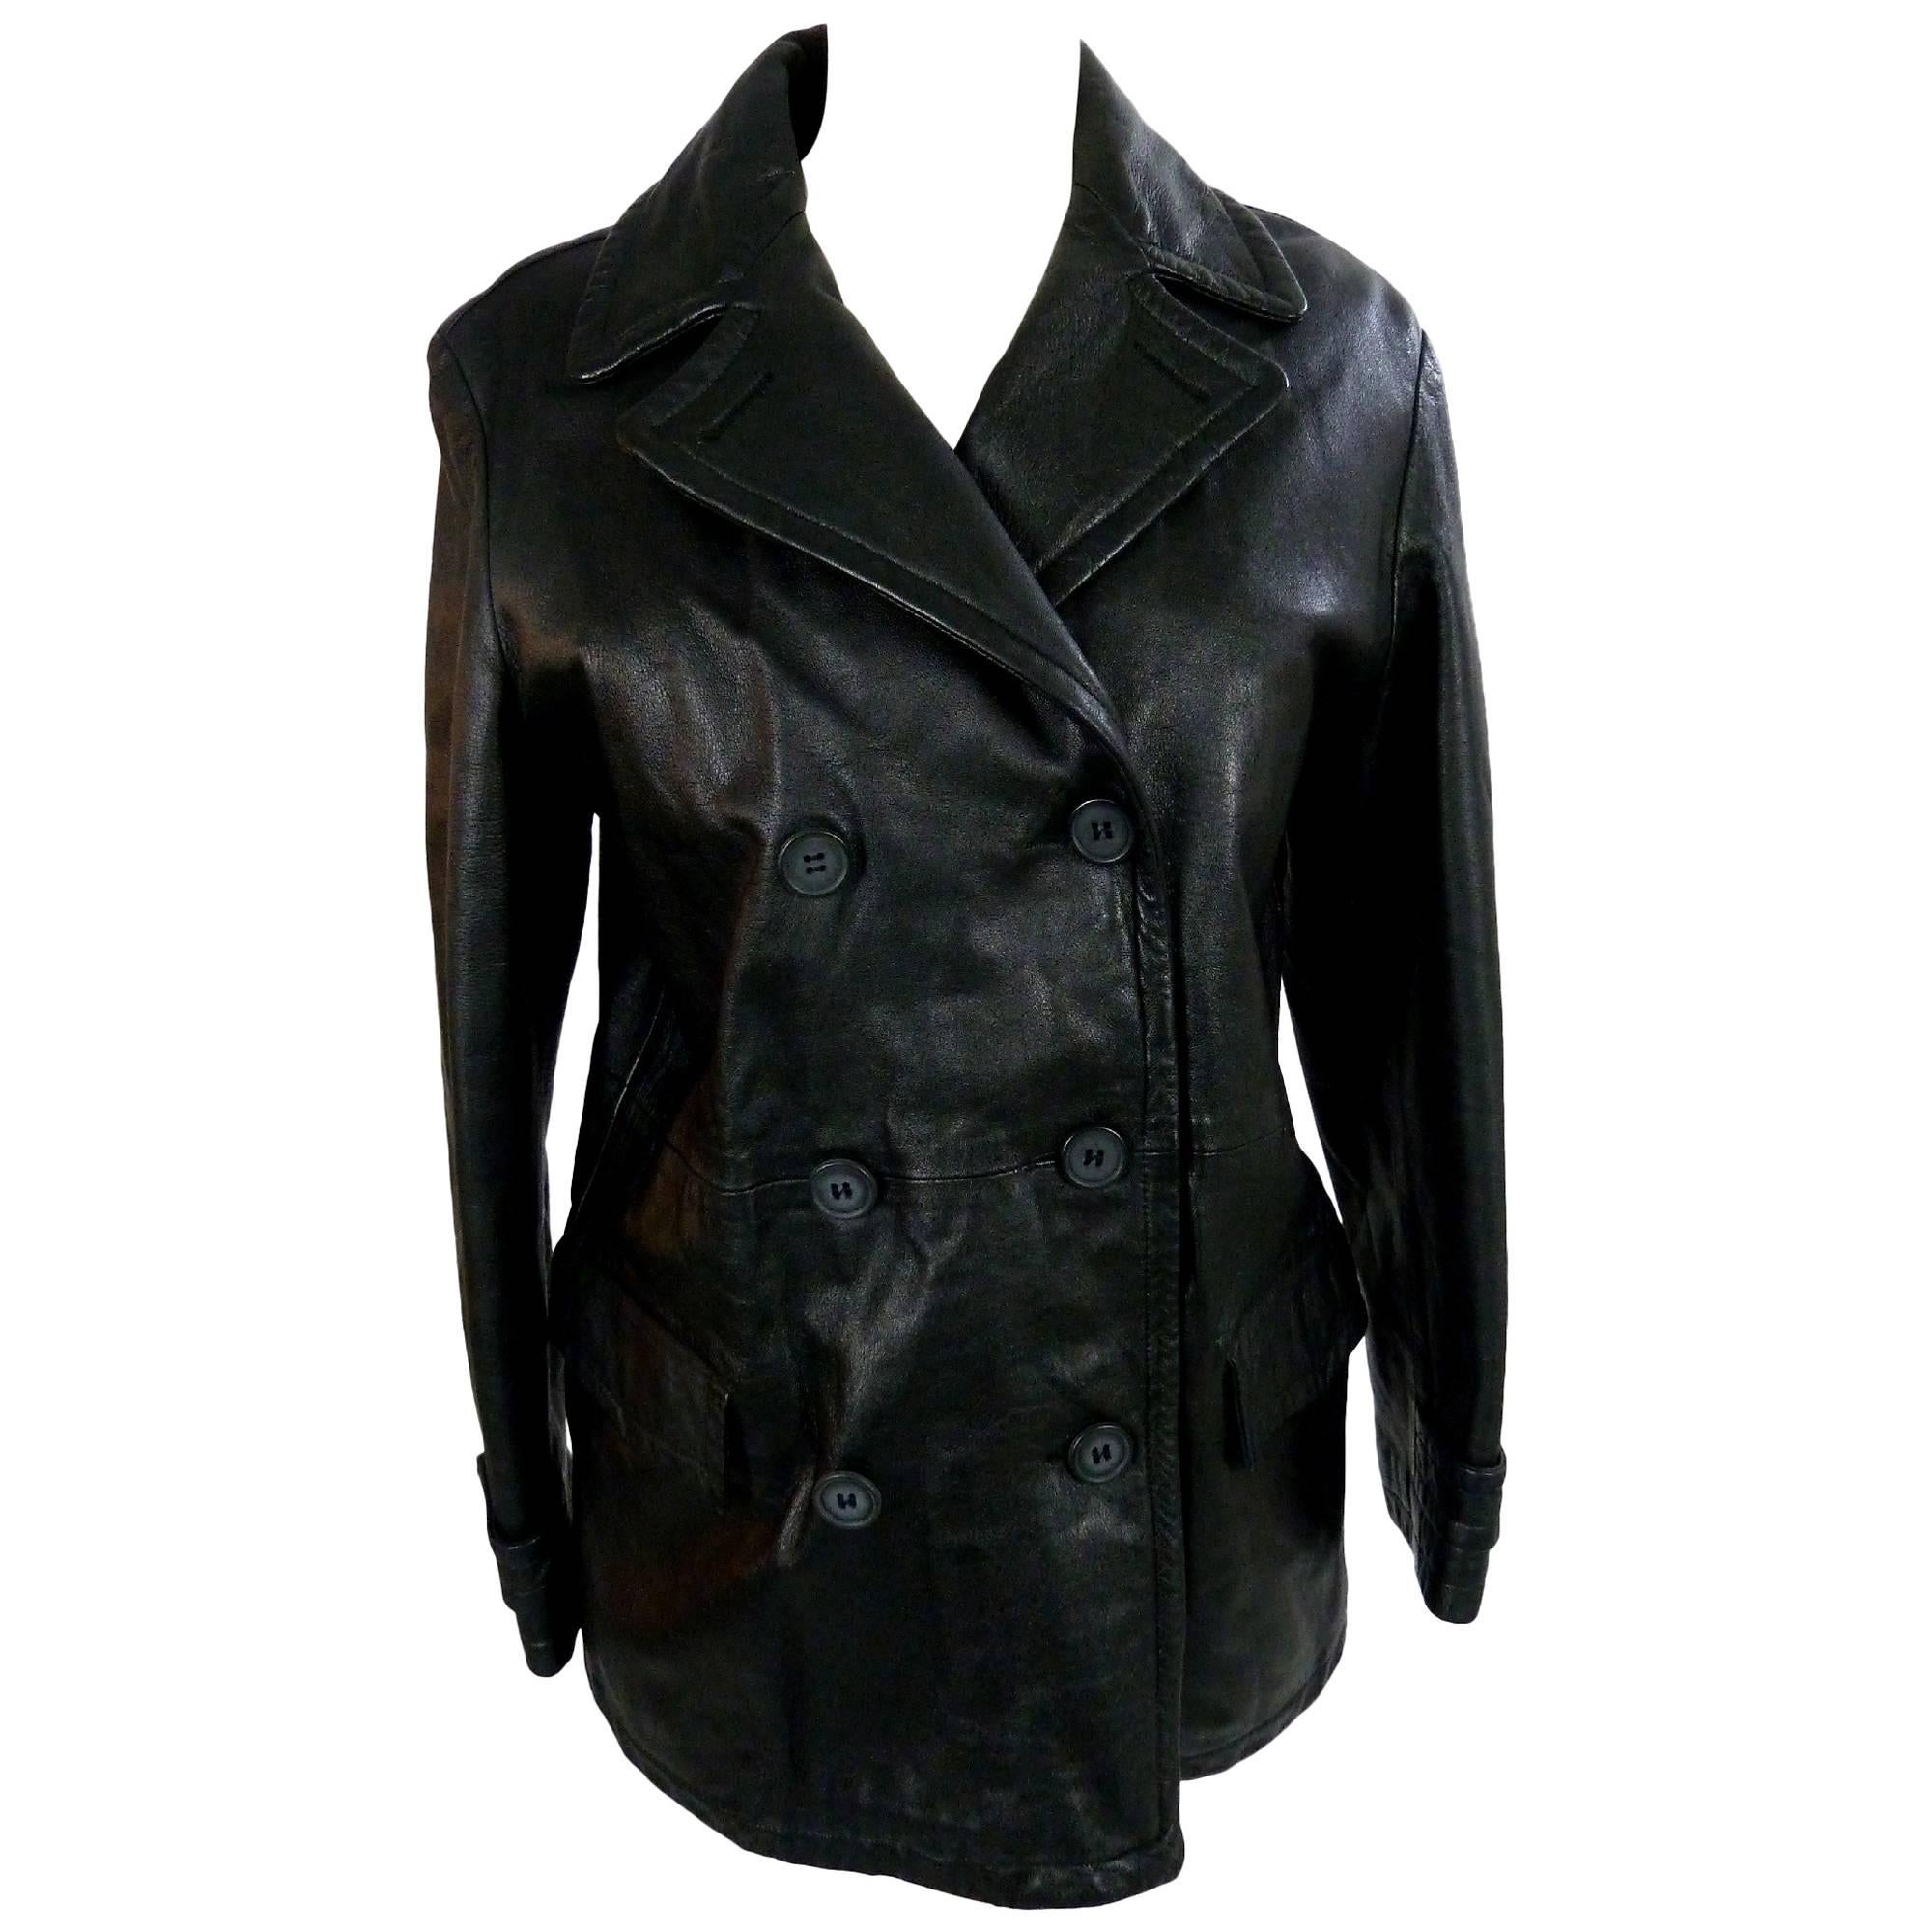 Giorgio Armani Peacoat Leather Black Double Breasted Italian Coat Jacket, 1980 For Sale